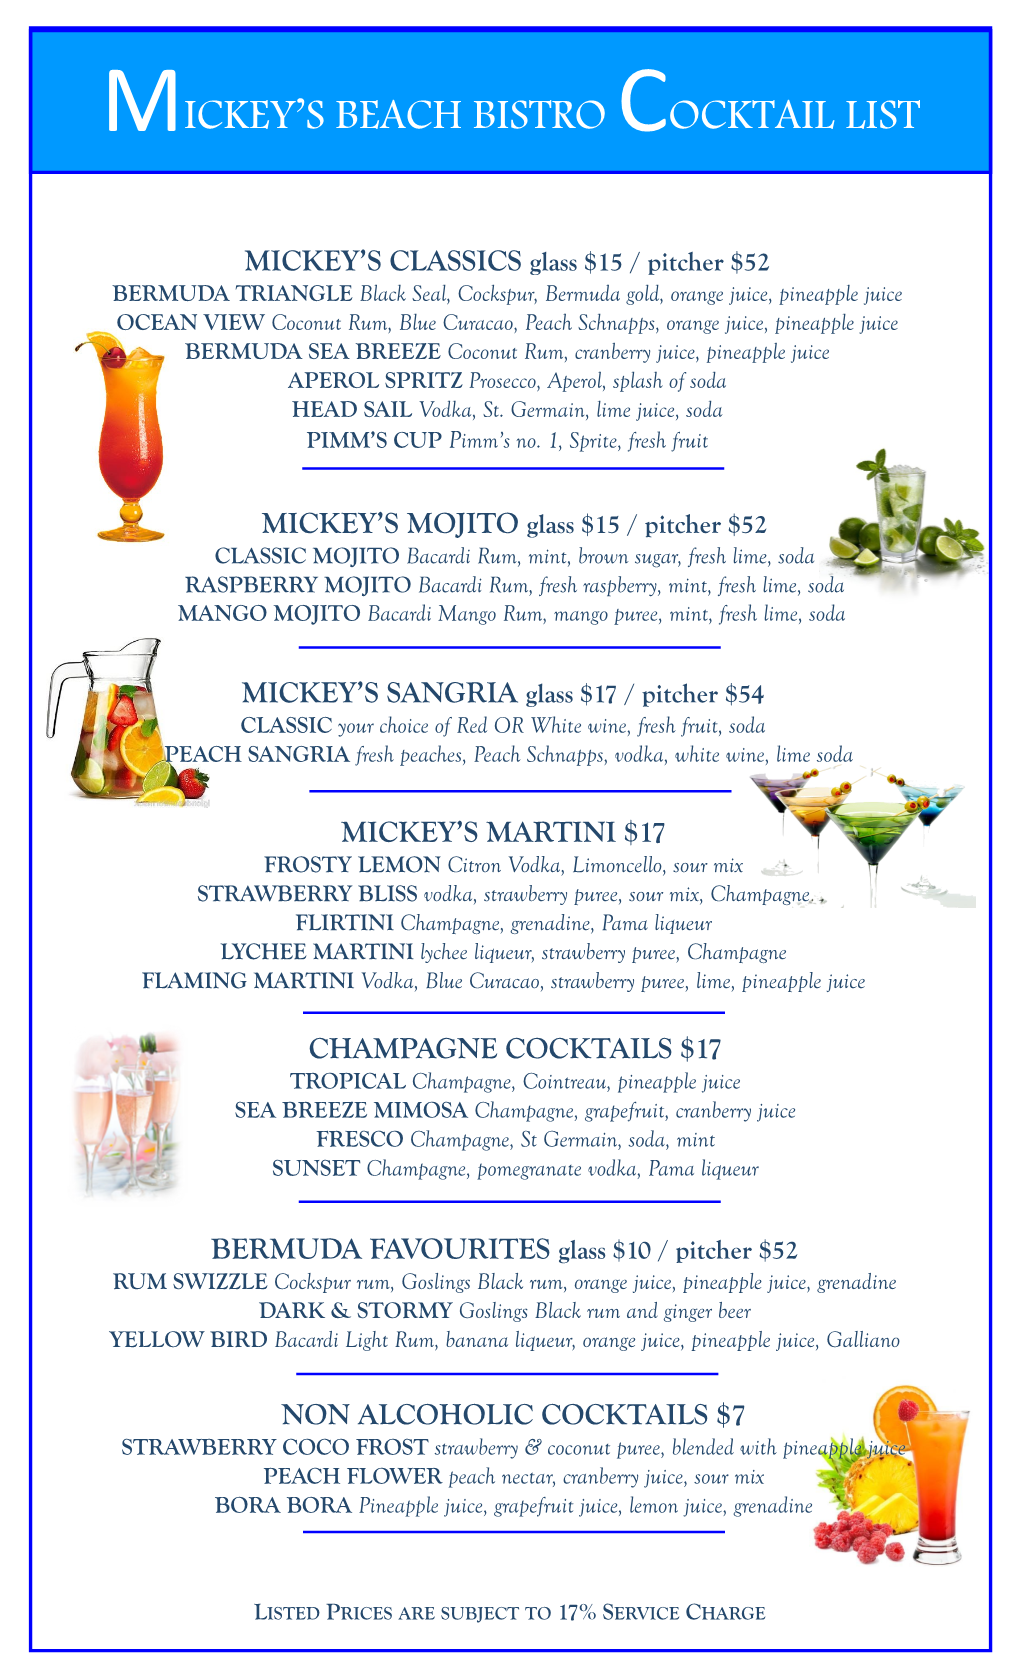 Mickey's Beach Bistro Cocktail List